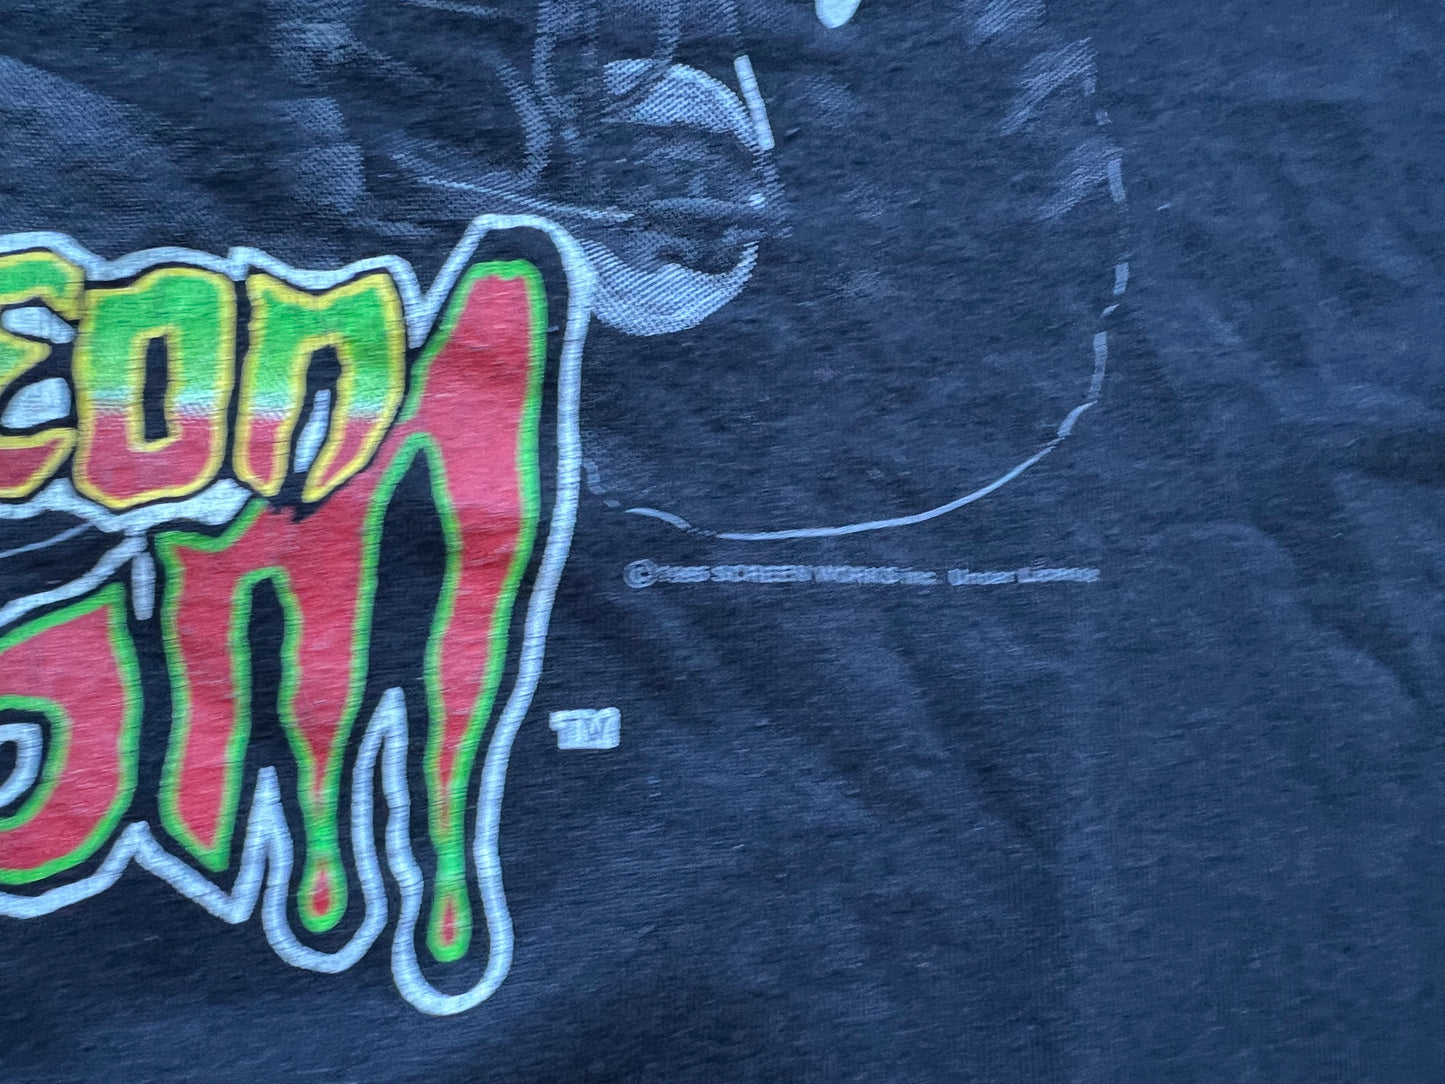 1995 WCW Dungeon of Doom Monster truck shirt